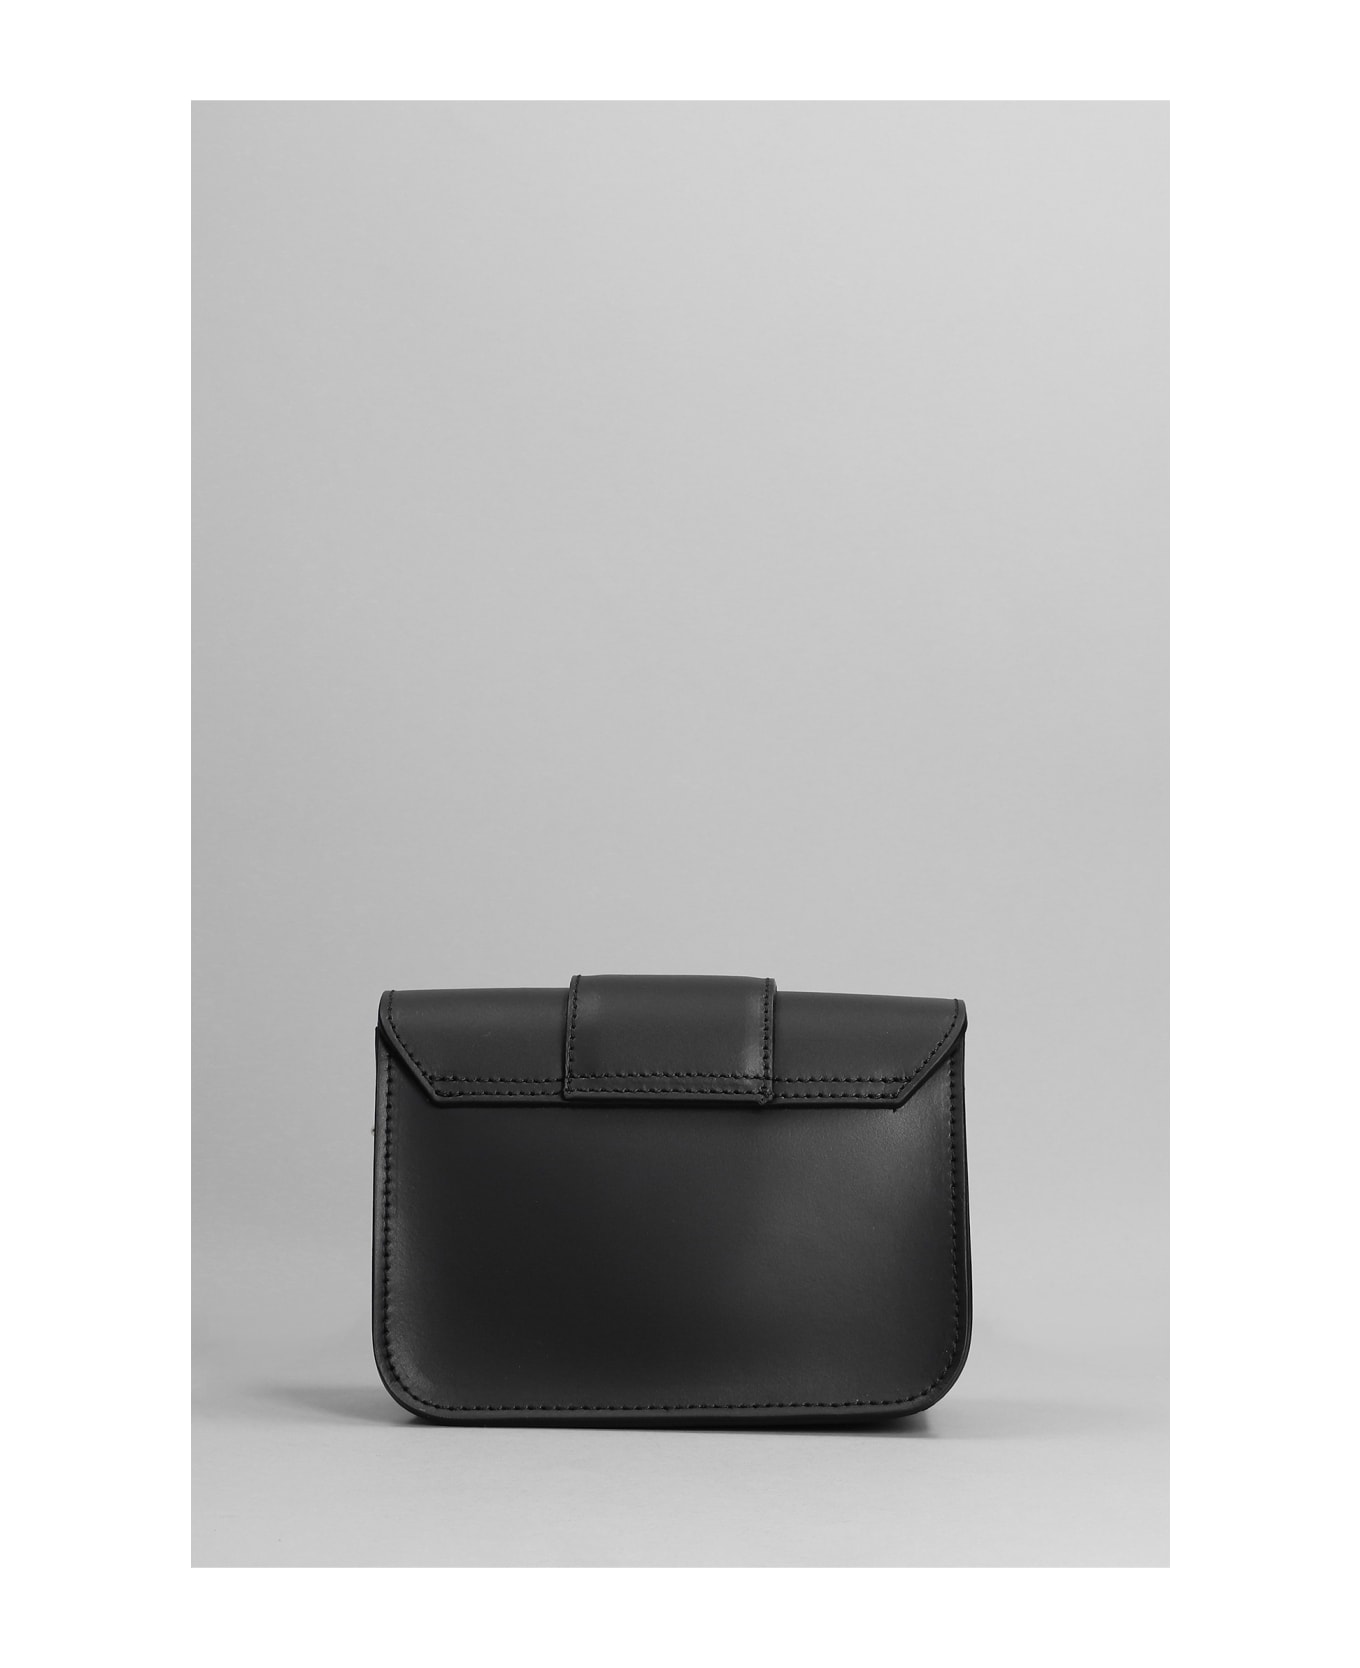 Marc Ellis Kourtney S Glam Shoulder Bag In Black Leather - black